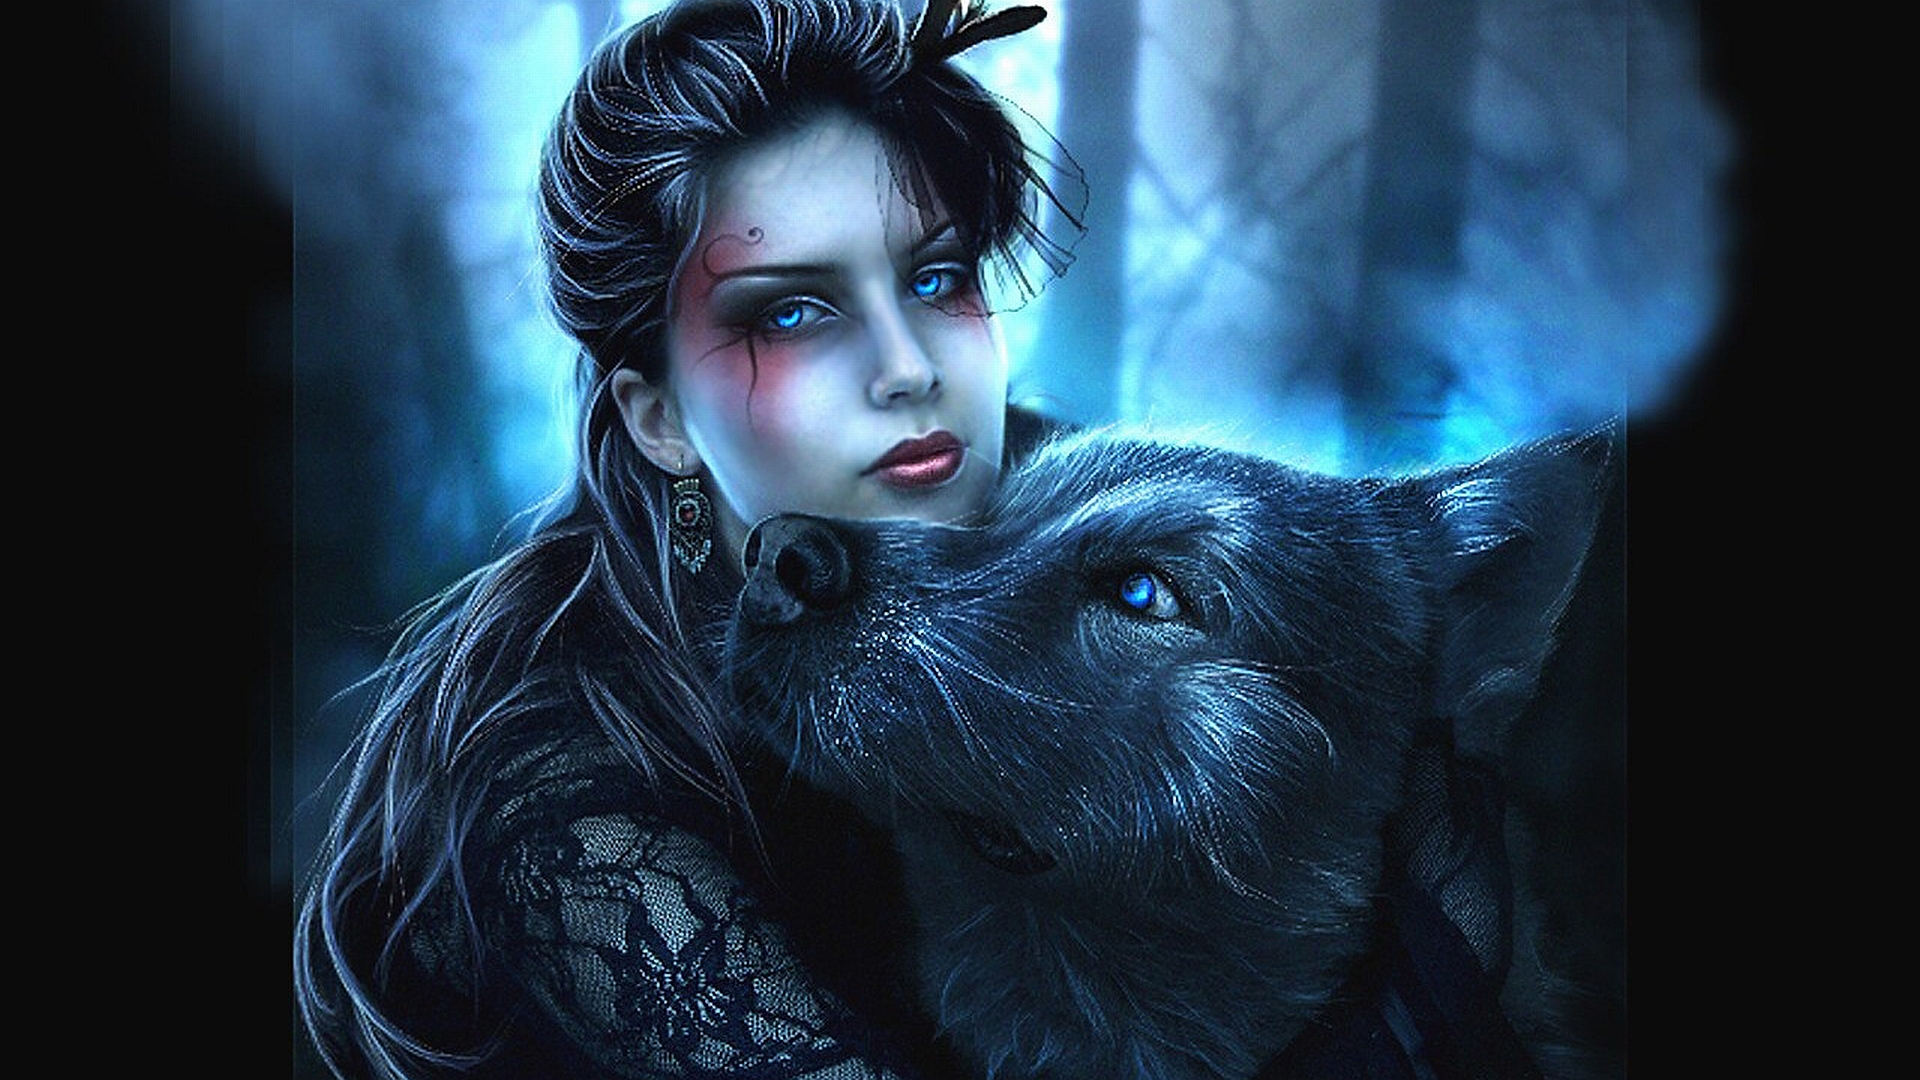 женщина-волчица со своим любимым, магия фэнтези картинка